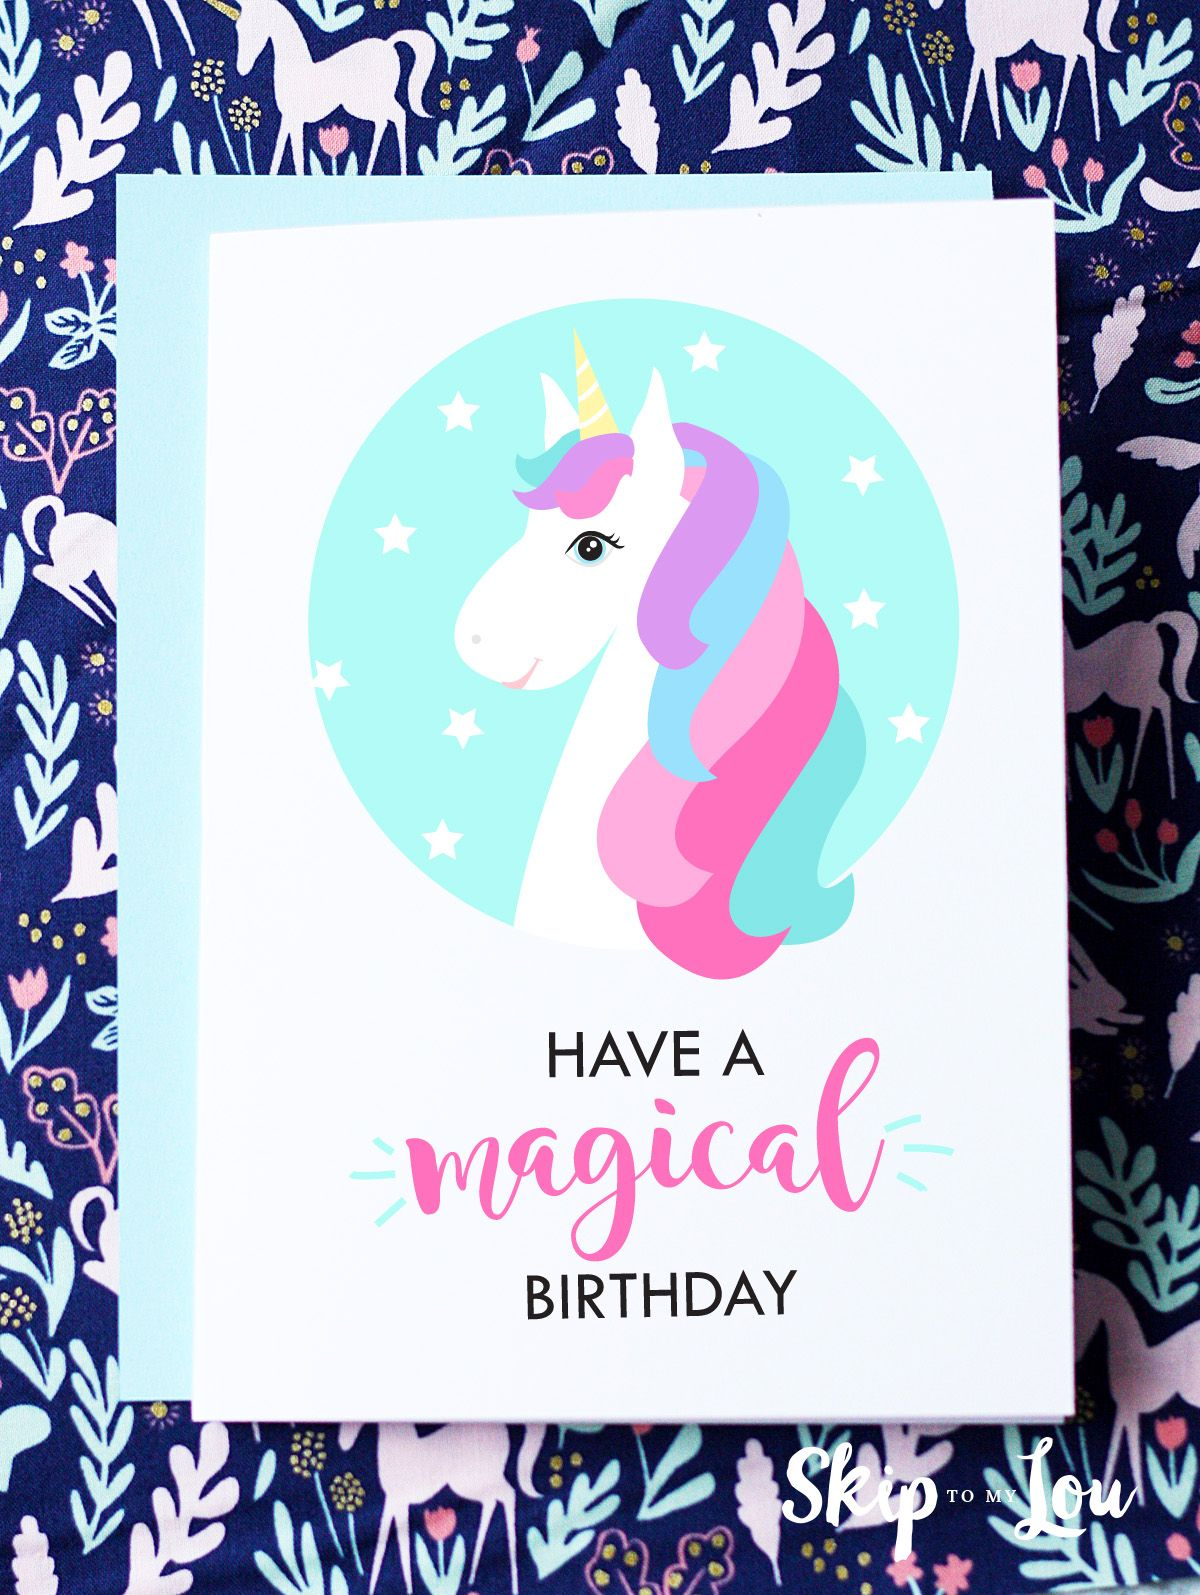 FREE Printable Birthday Cards Free Printable Birthday Cards Unicorn 